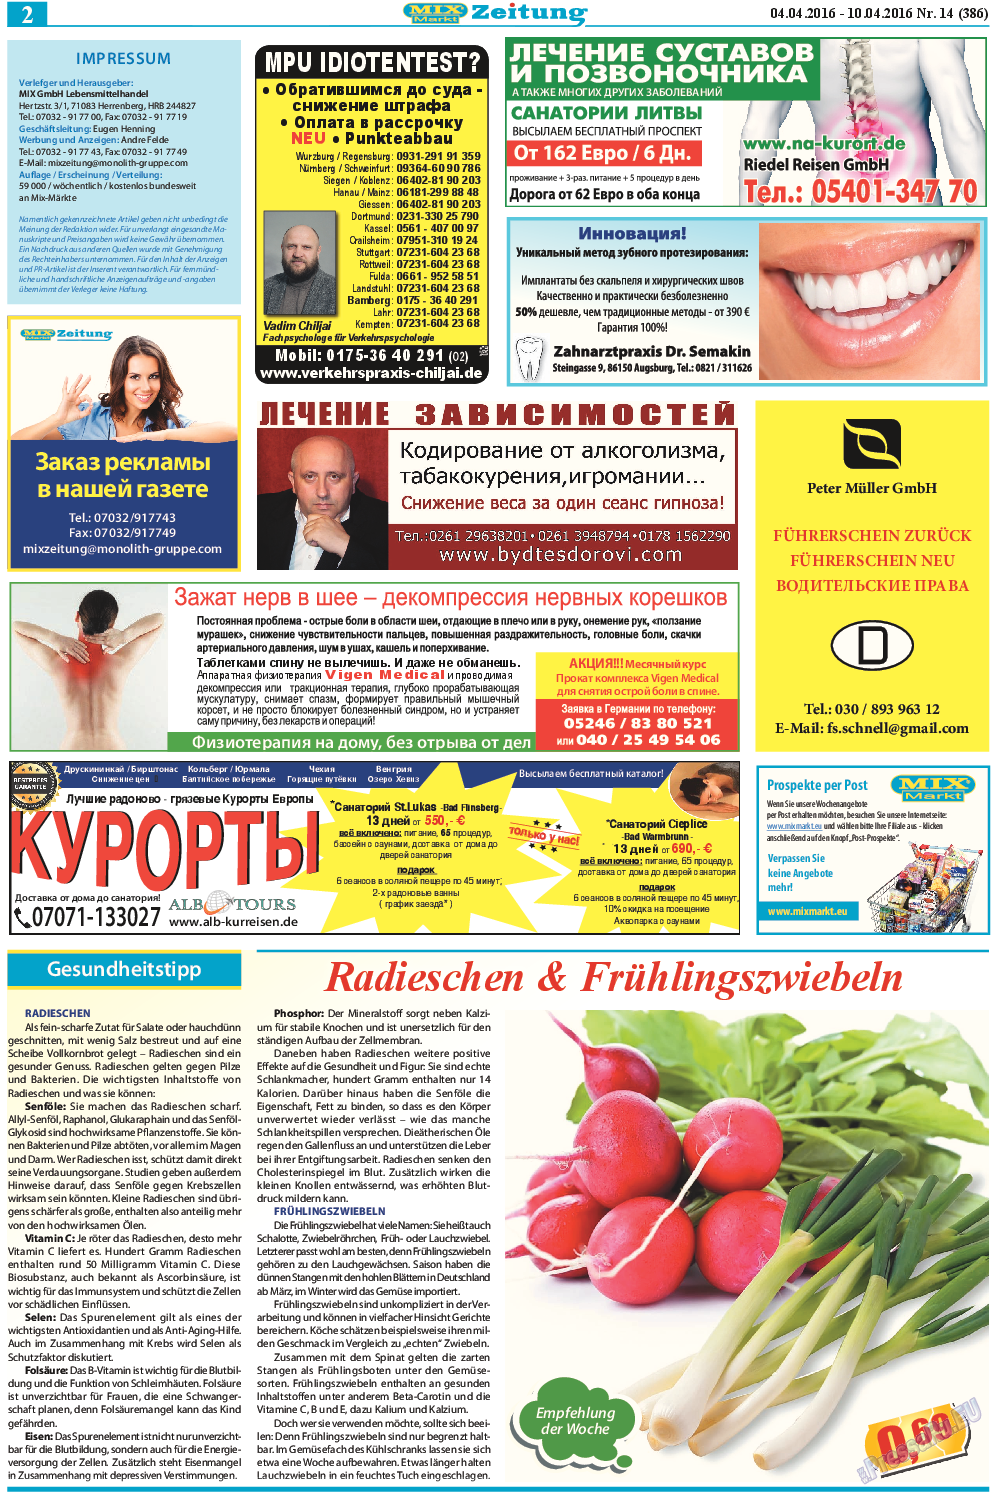 MIX-Markt Zeitung, газета. 2016 №14 стр.2